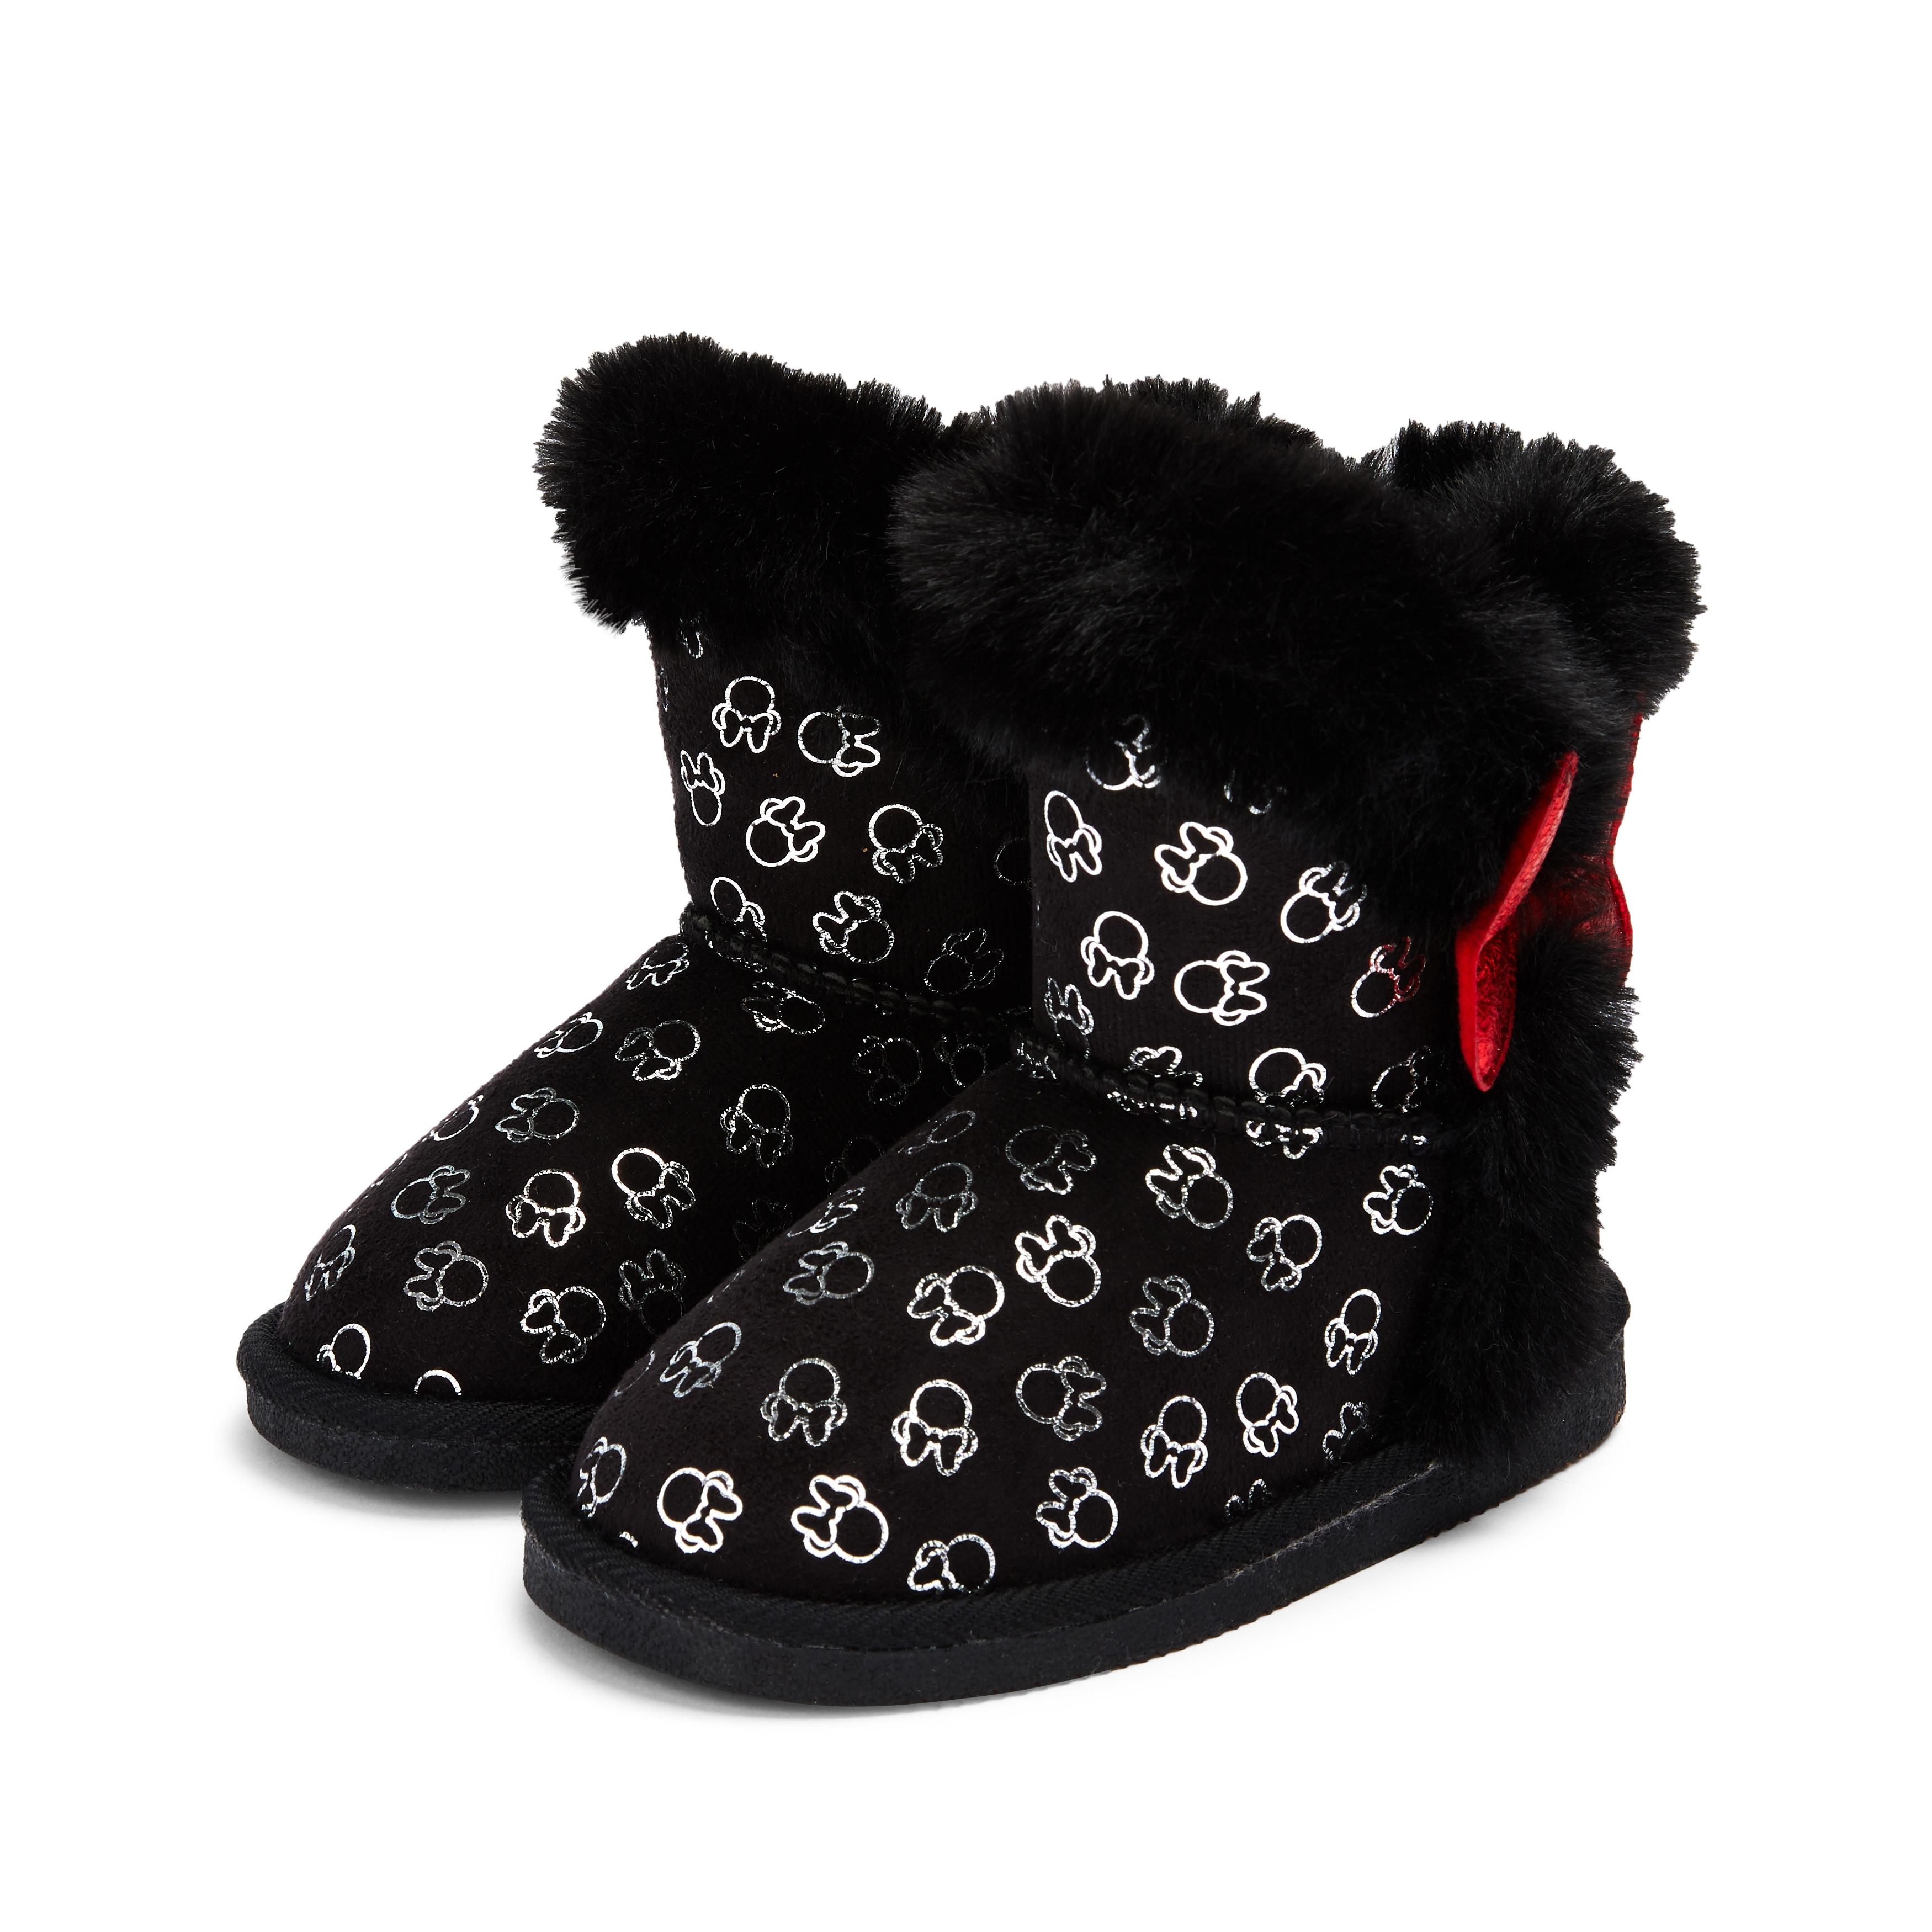 calzado y complementos Disney Minnie Mouse Pantorrilla Botas Encaje Botas Negras Infantil Chicas jóvenes primark Moda NA5065303